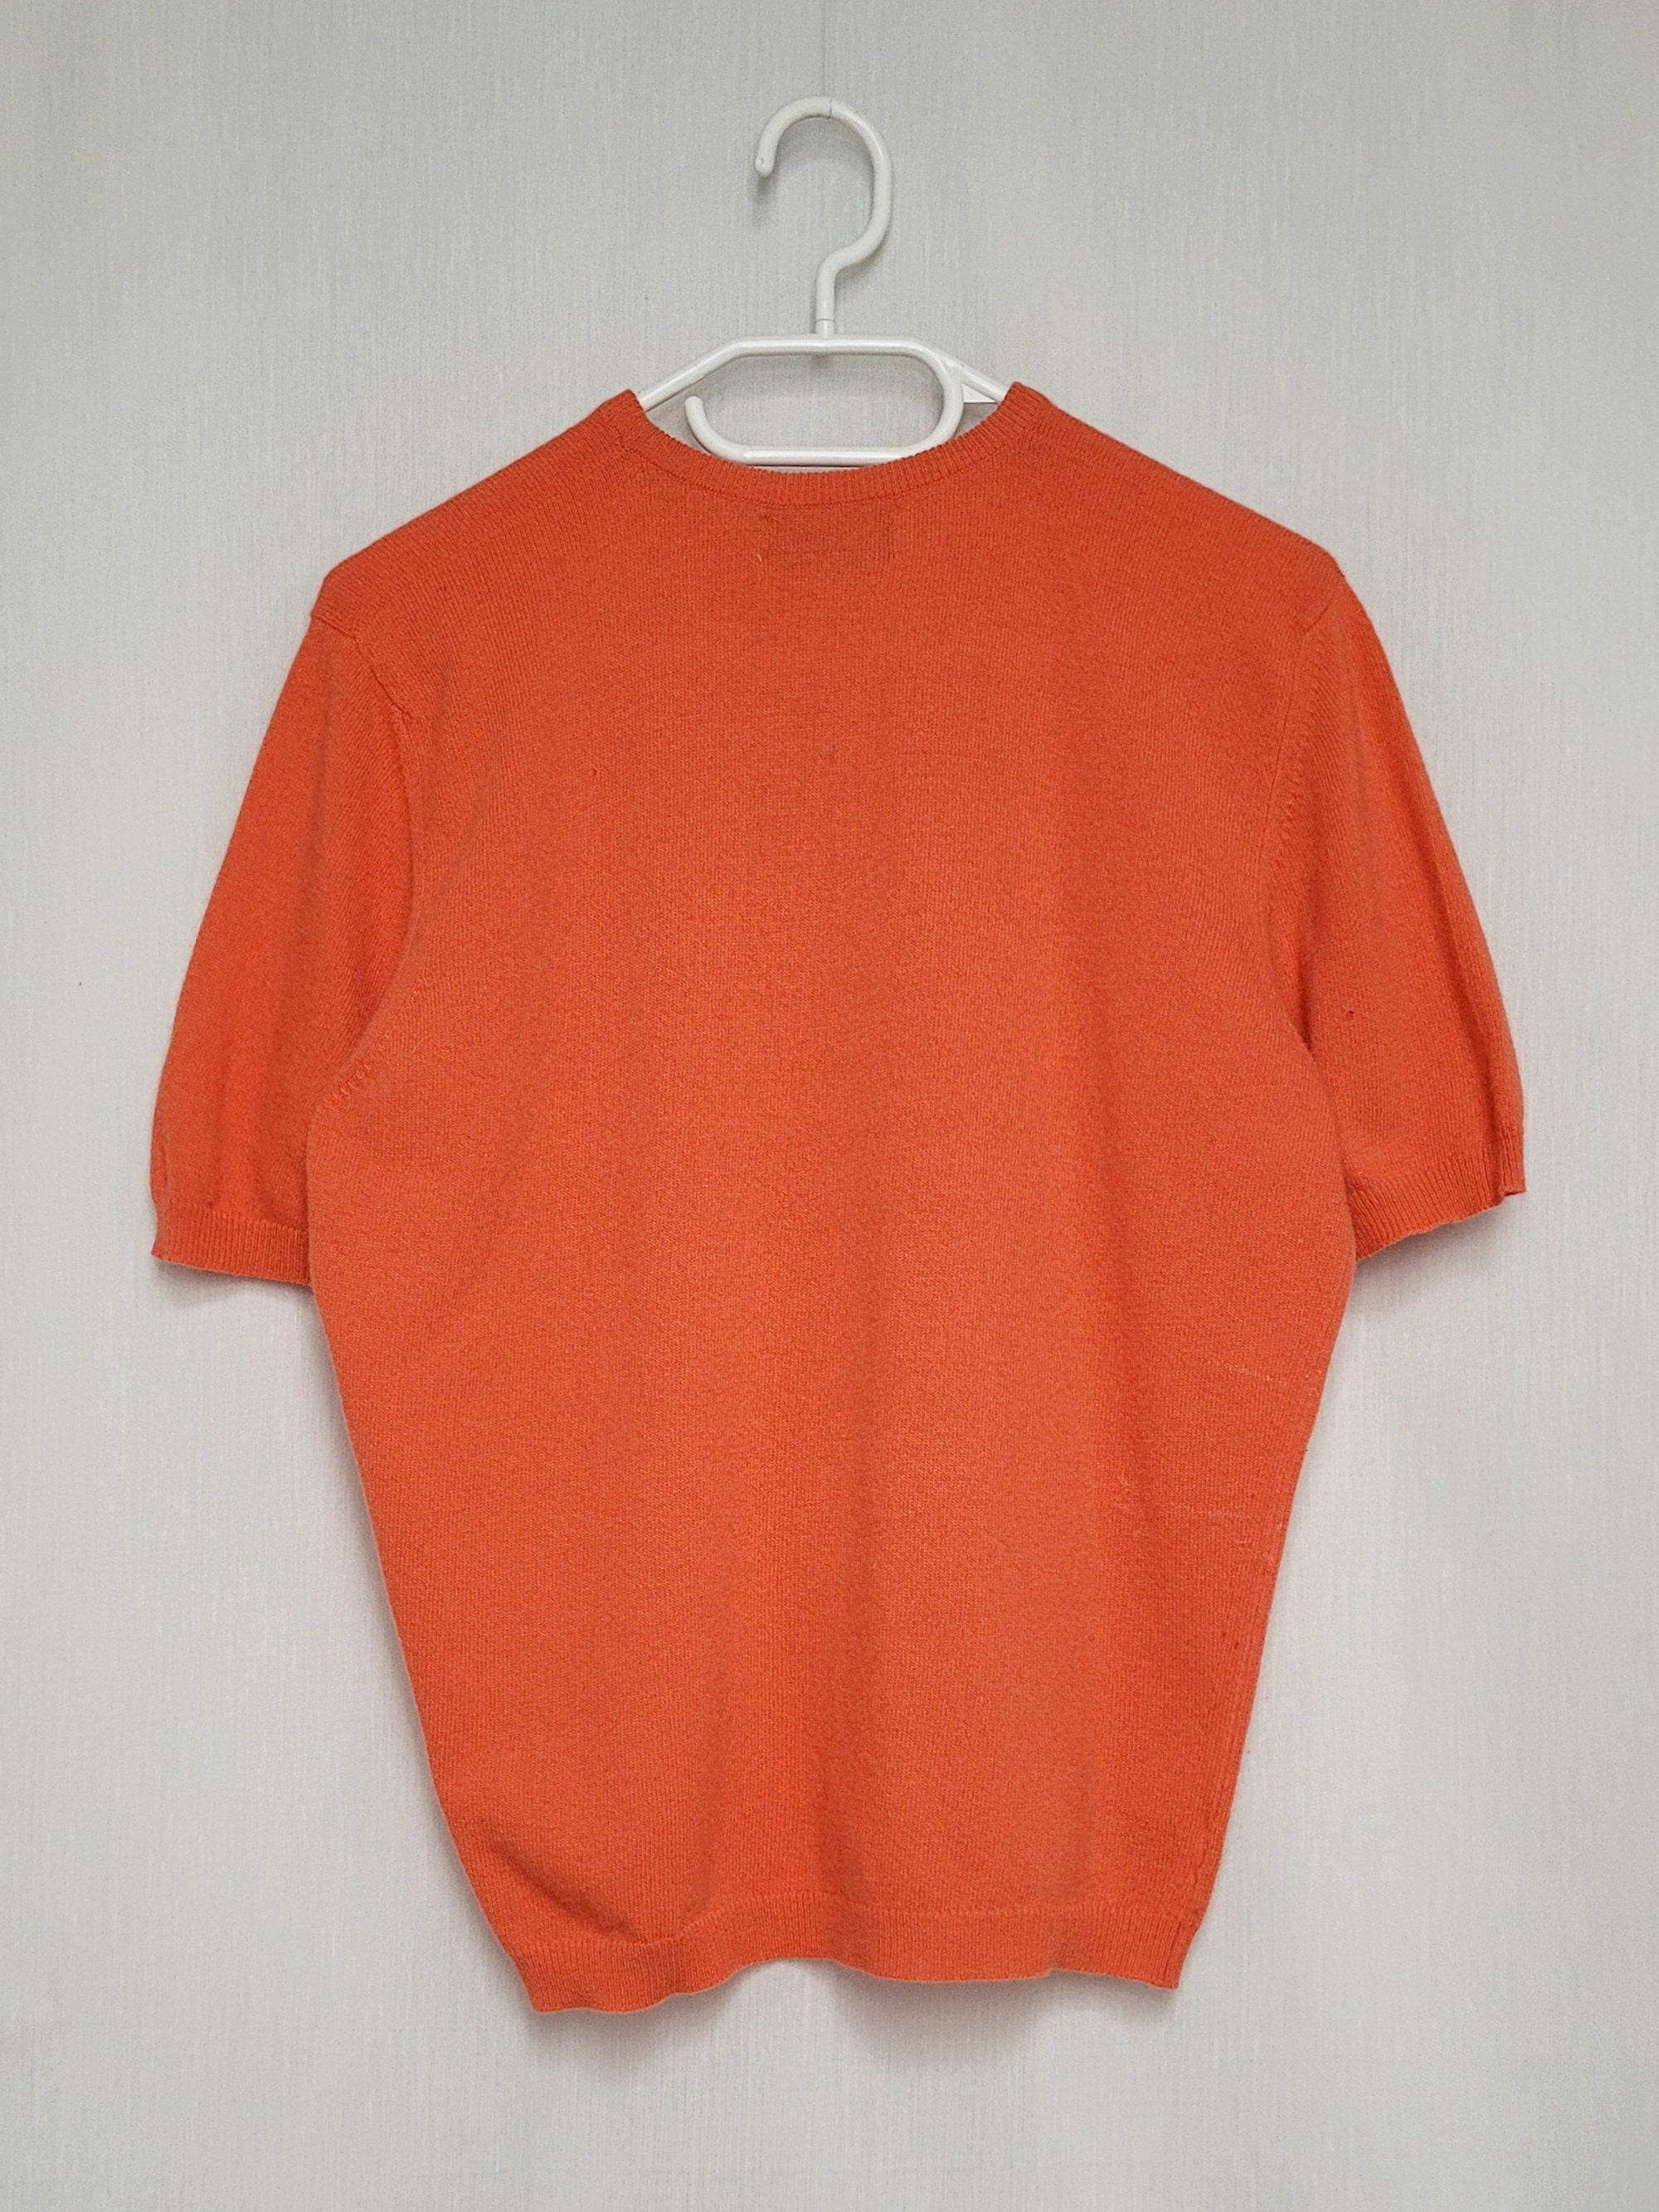 Vintage 90s minimalist cashmere knitted salamander orange crew top